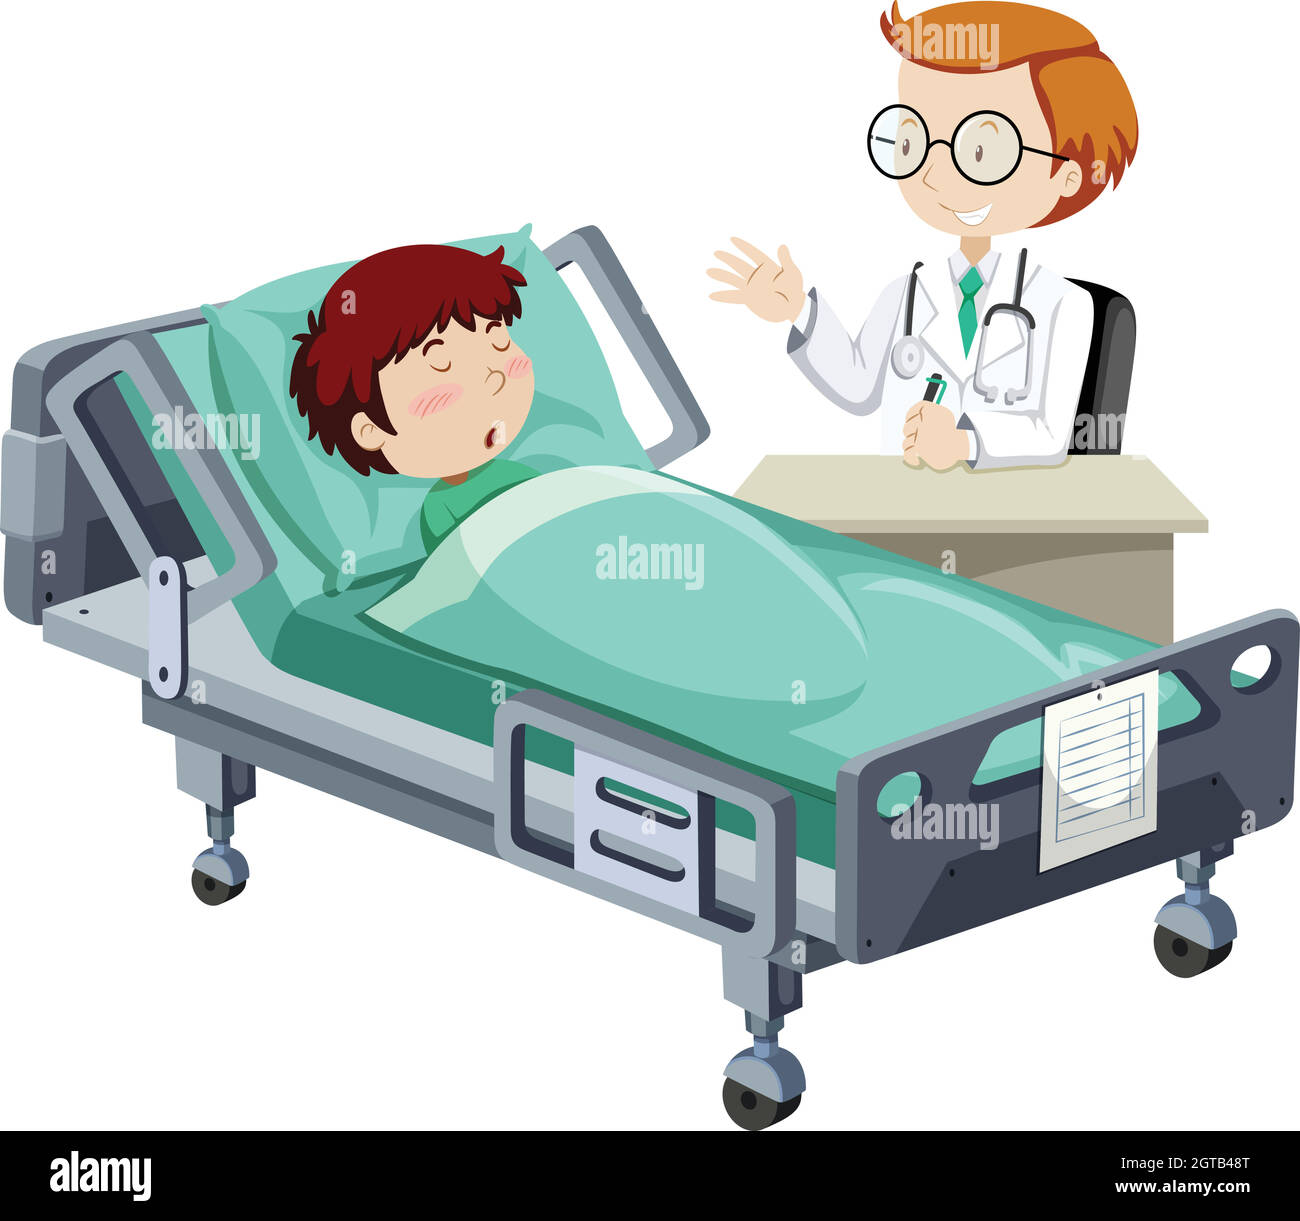 Un garçon malade qui dormait à l'hôpital Illustration de Vecteur